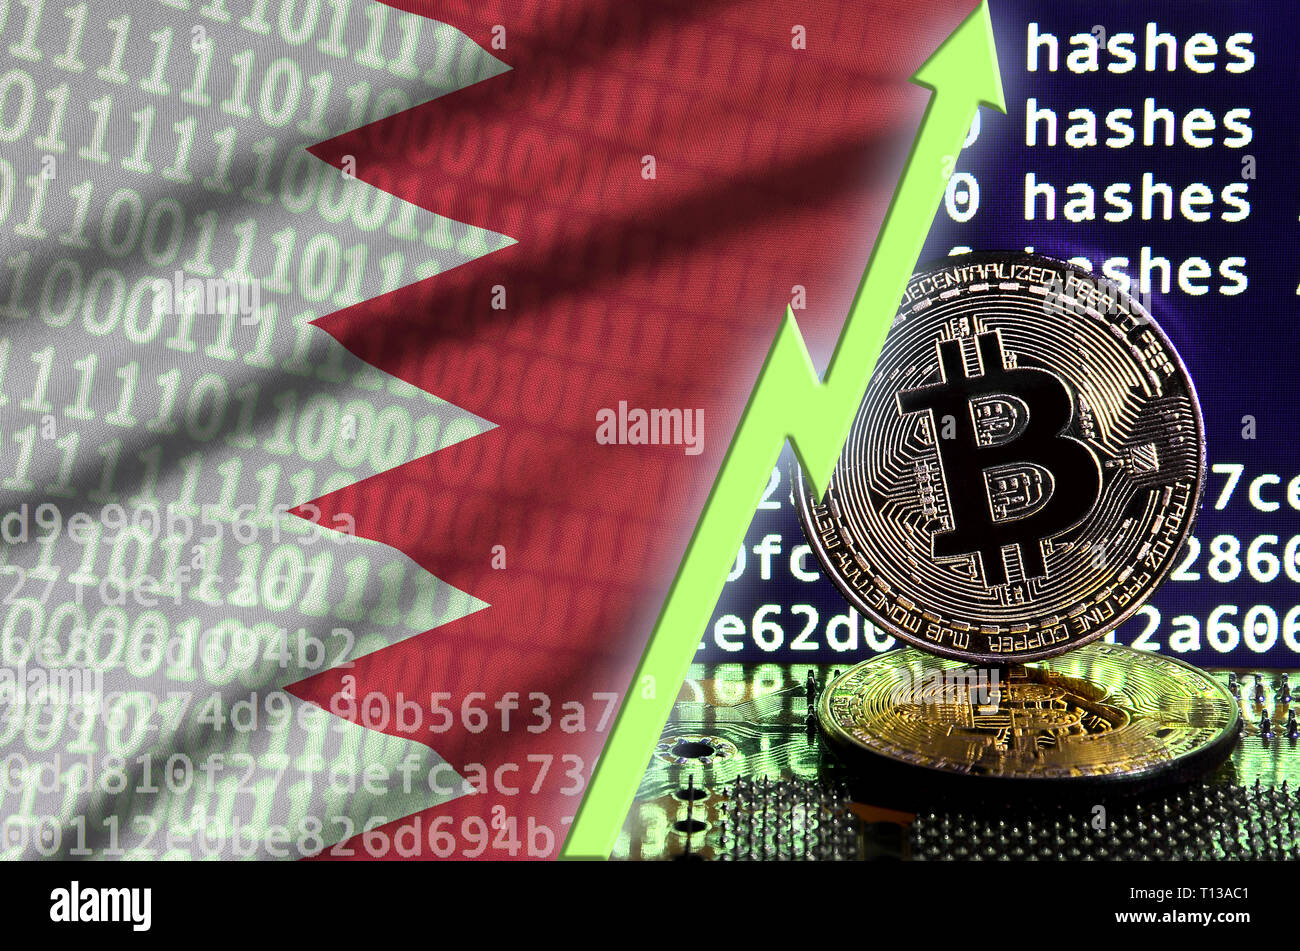 Drapeau de Bahreïn et l'augmentation de flèche verte sur l'écran d'exploitation minière bitcoin et deux d'or physique des bitcoins. Concept de conversion élevé dans l'exploitation minière cryptocurrency Banque D'Images